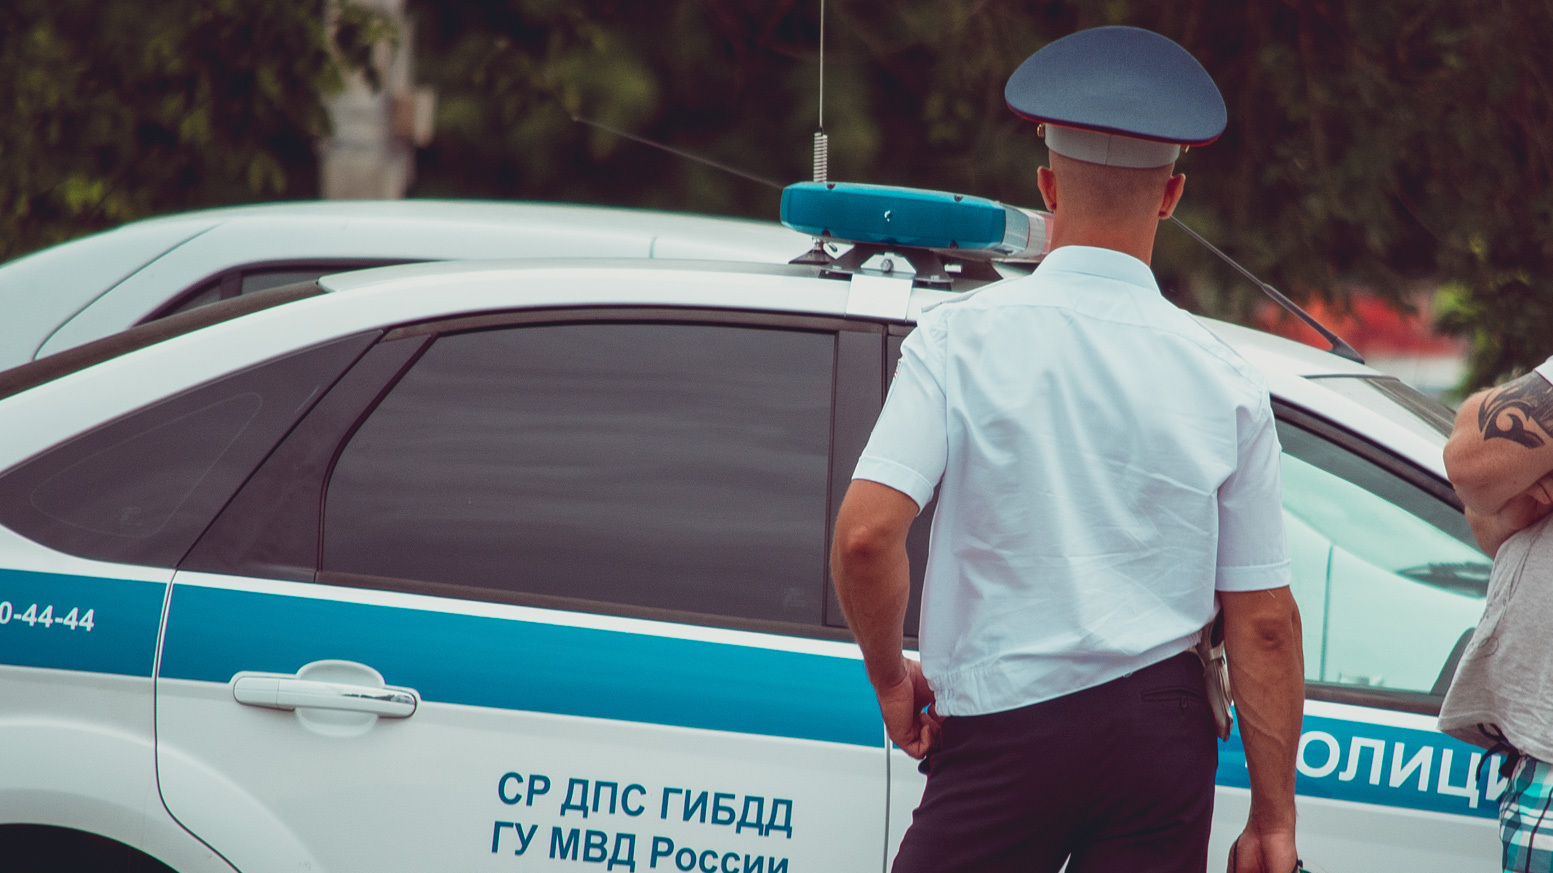 Гаишника будут судить в Карачаево-Черкесии за взяточничество